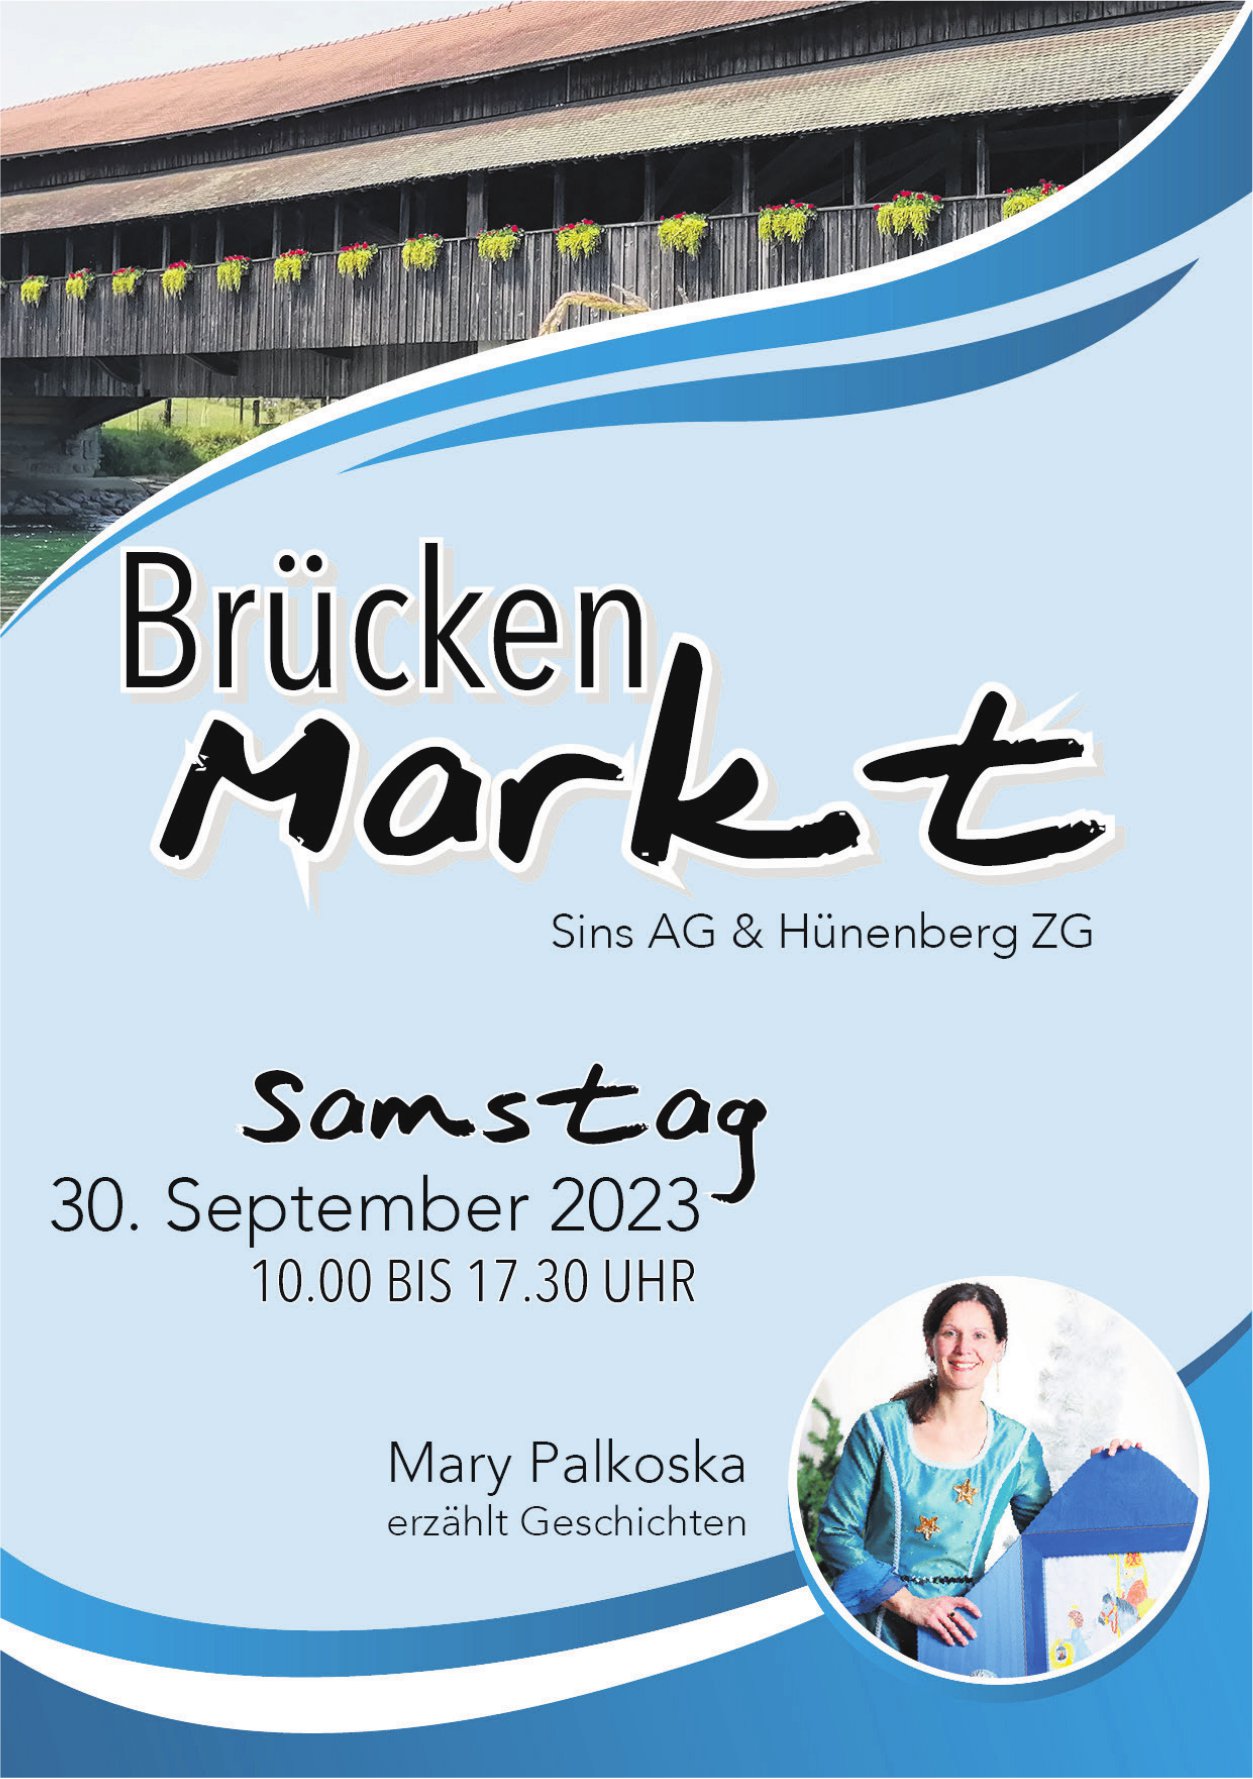 Mary Palkoska erzählt Geschichten, 30. September, Brückenmarkt, Sind und Hünenberg